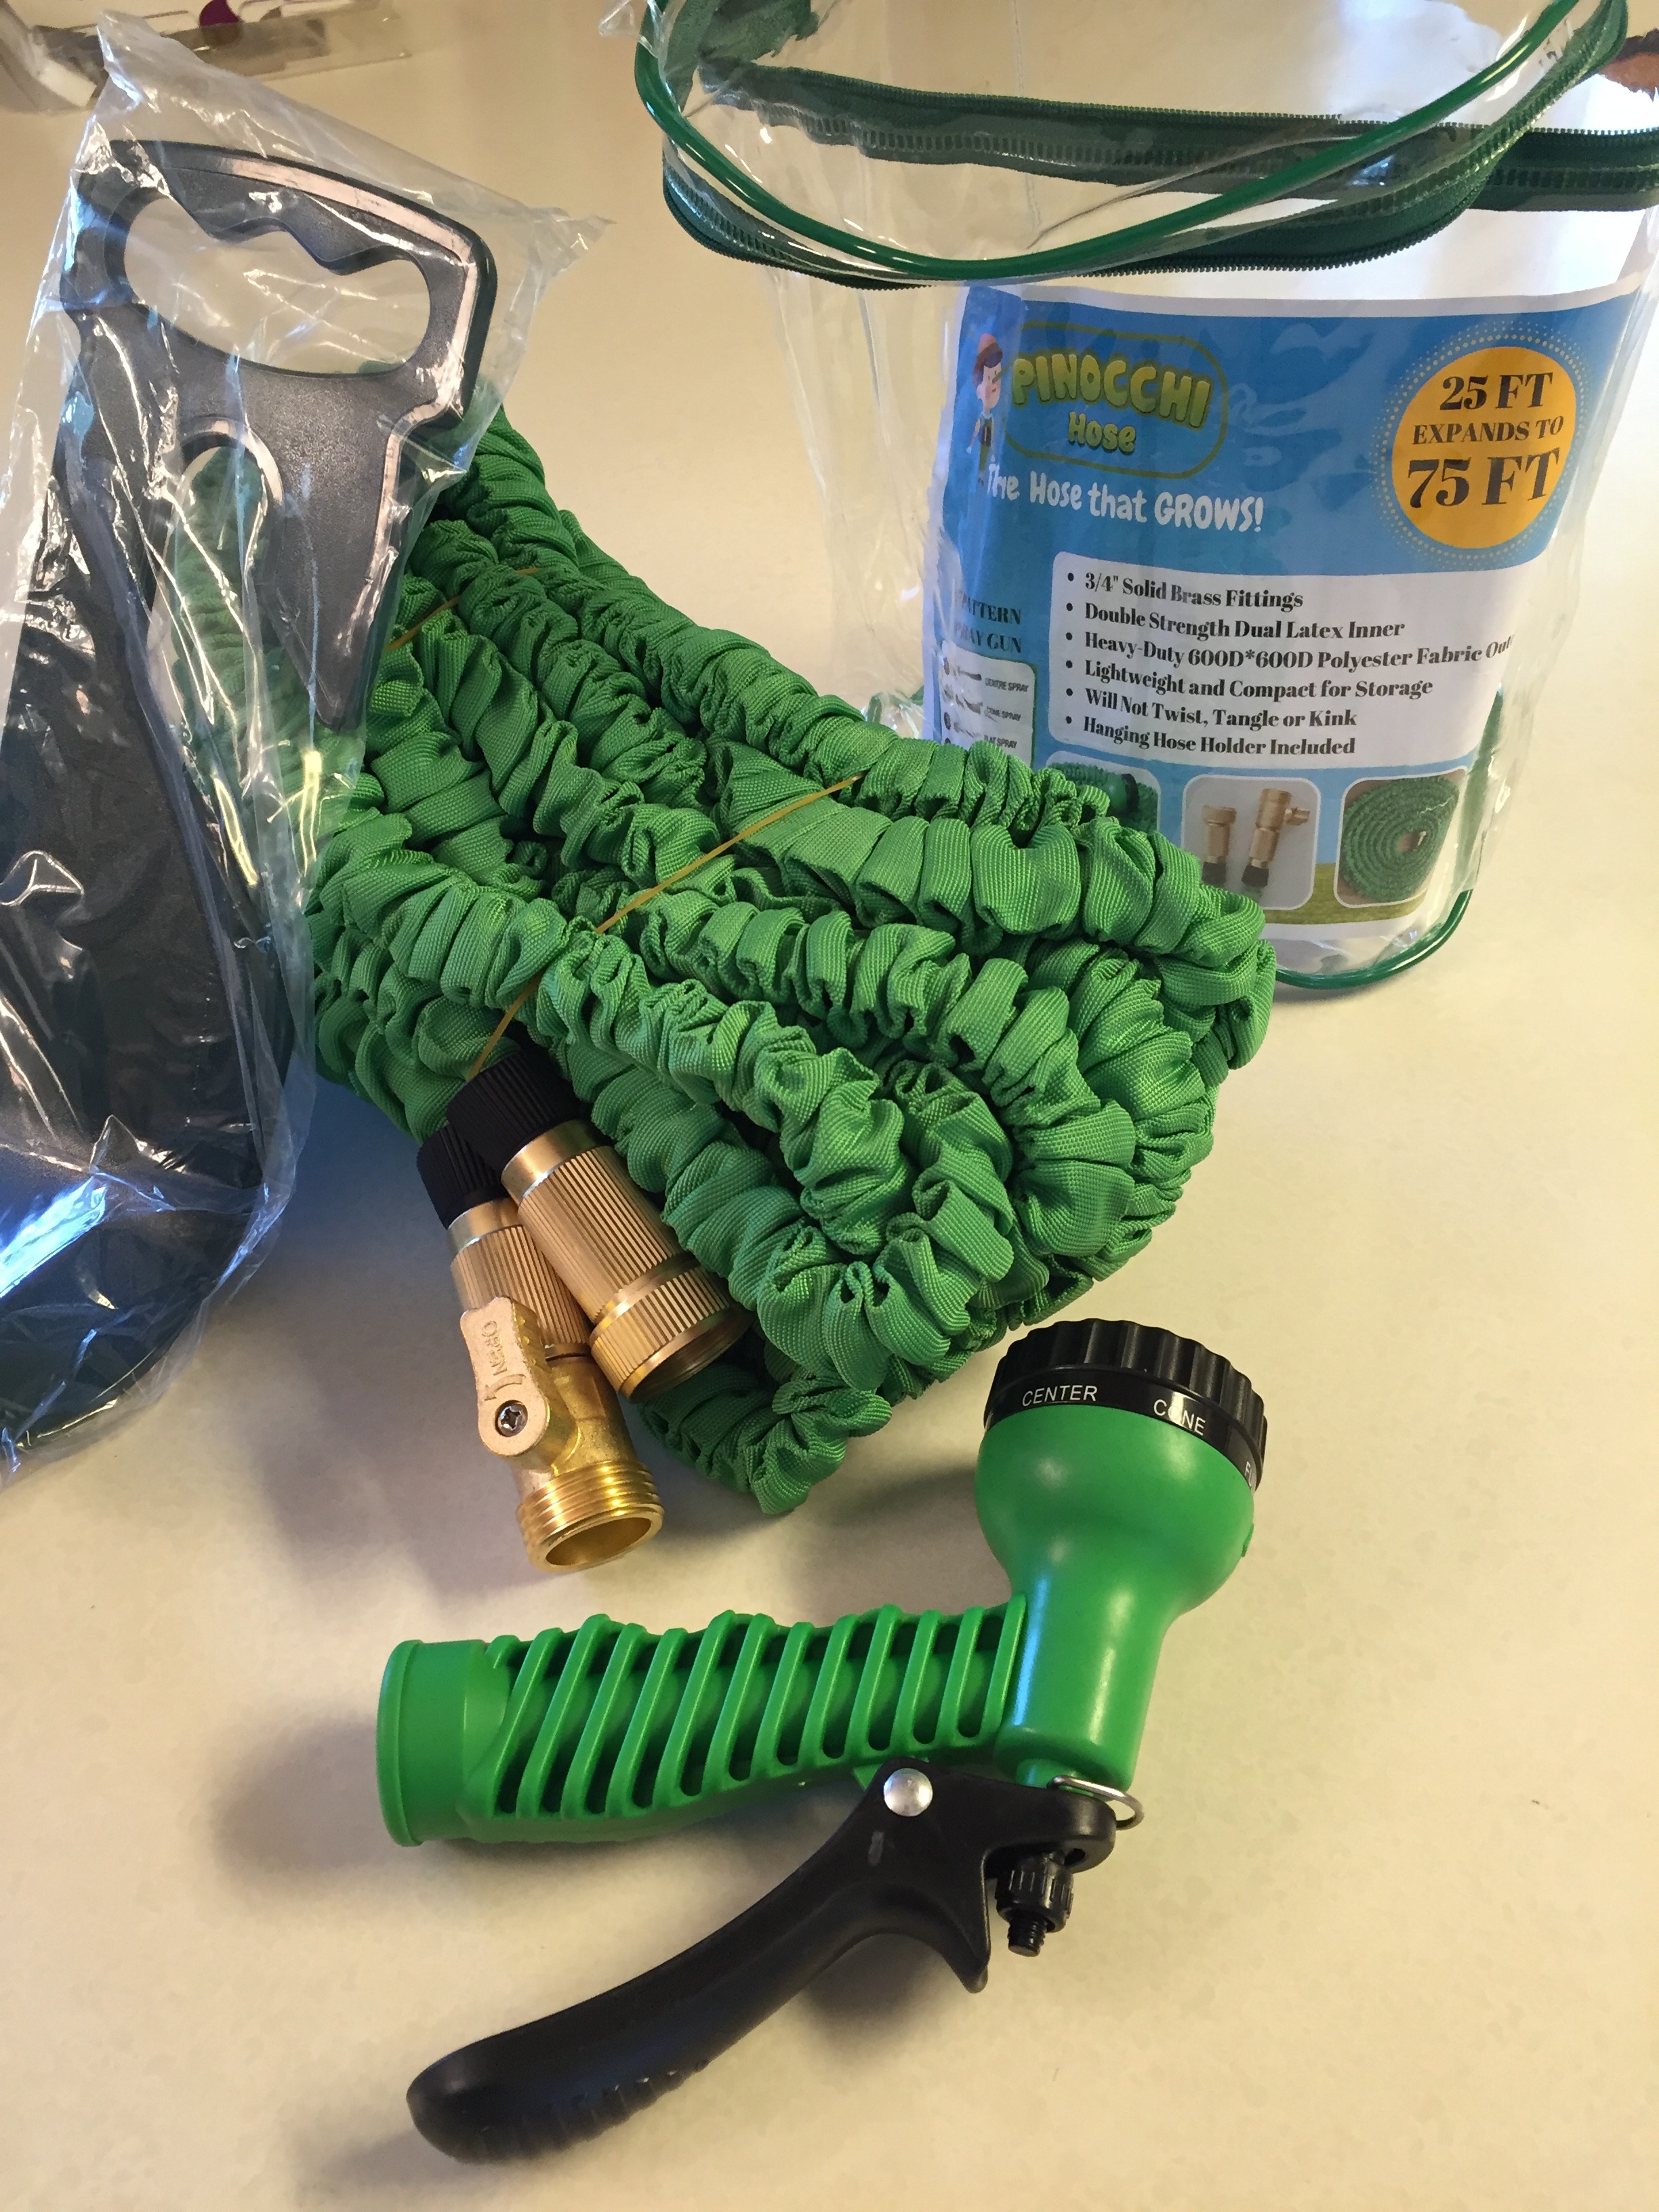 packaged green hose and hose holder